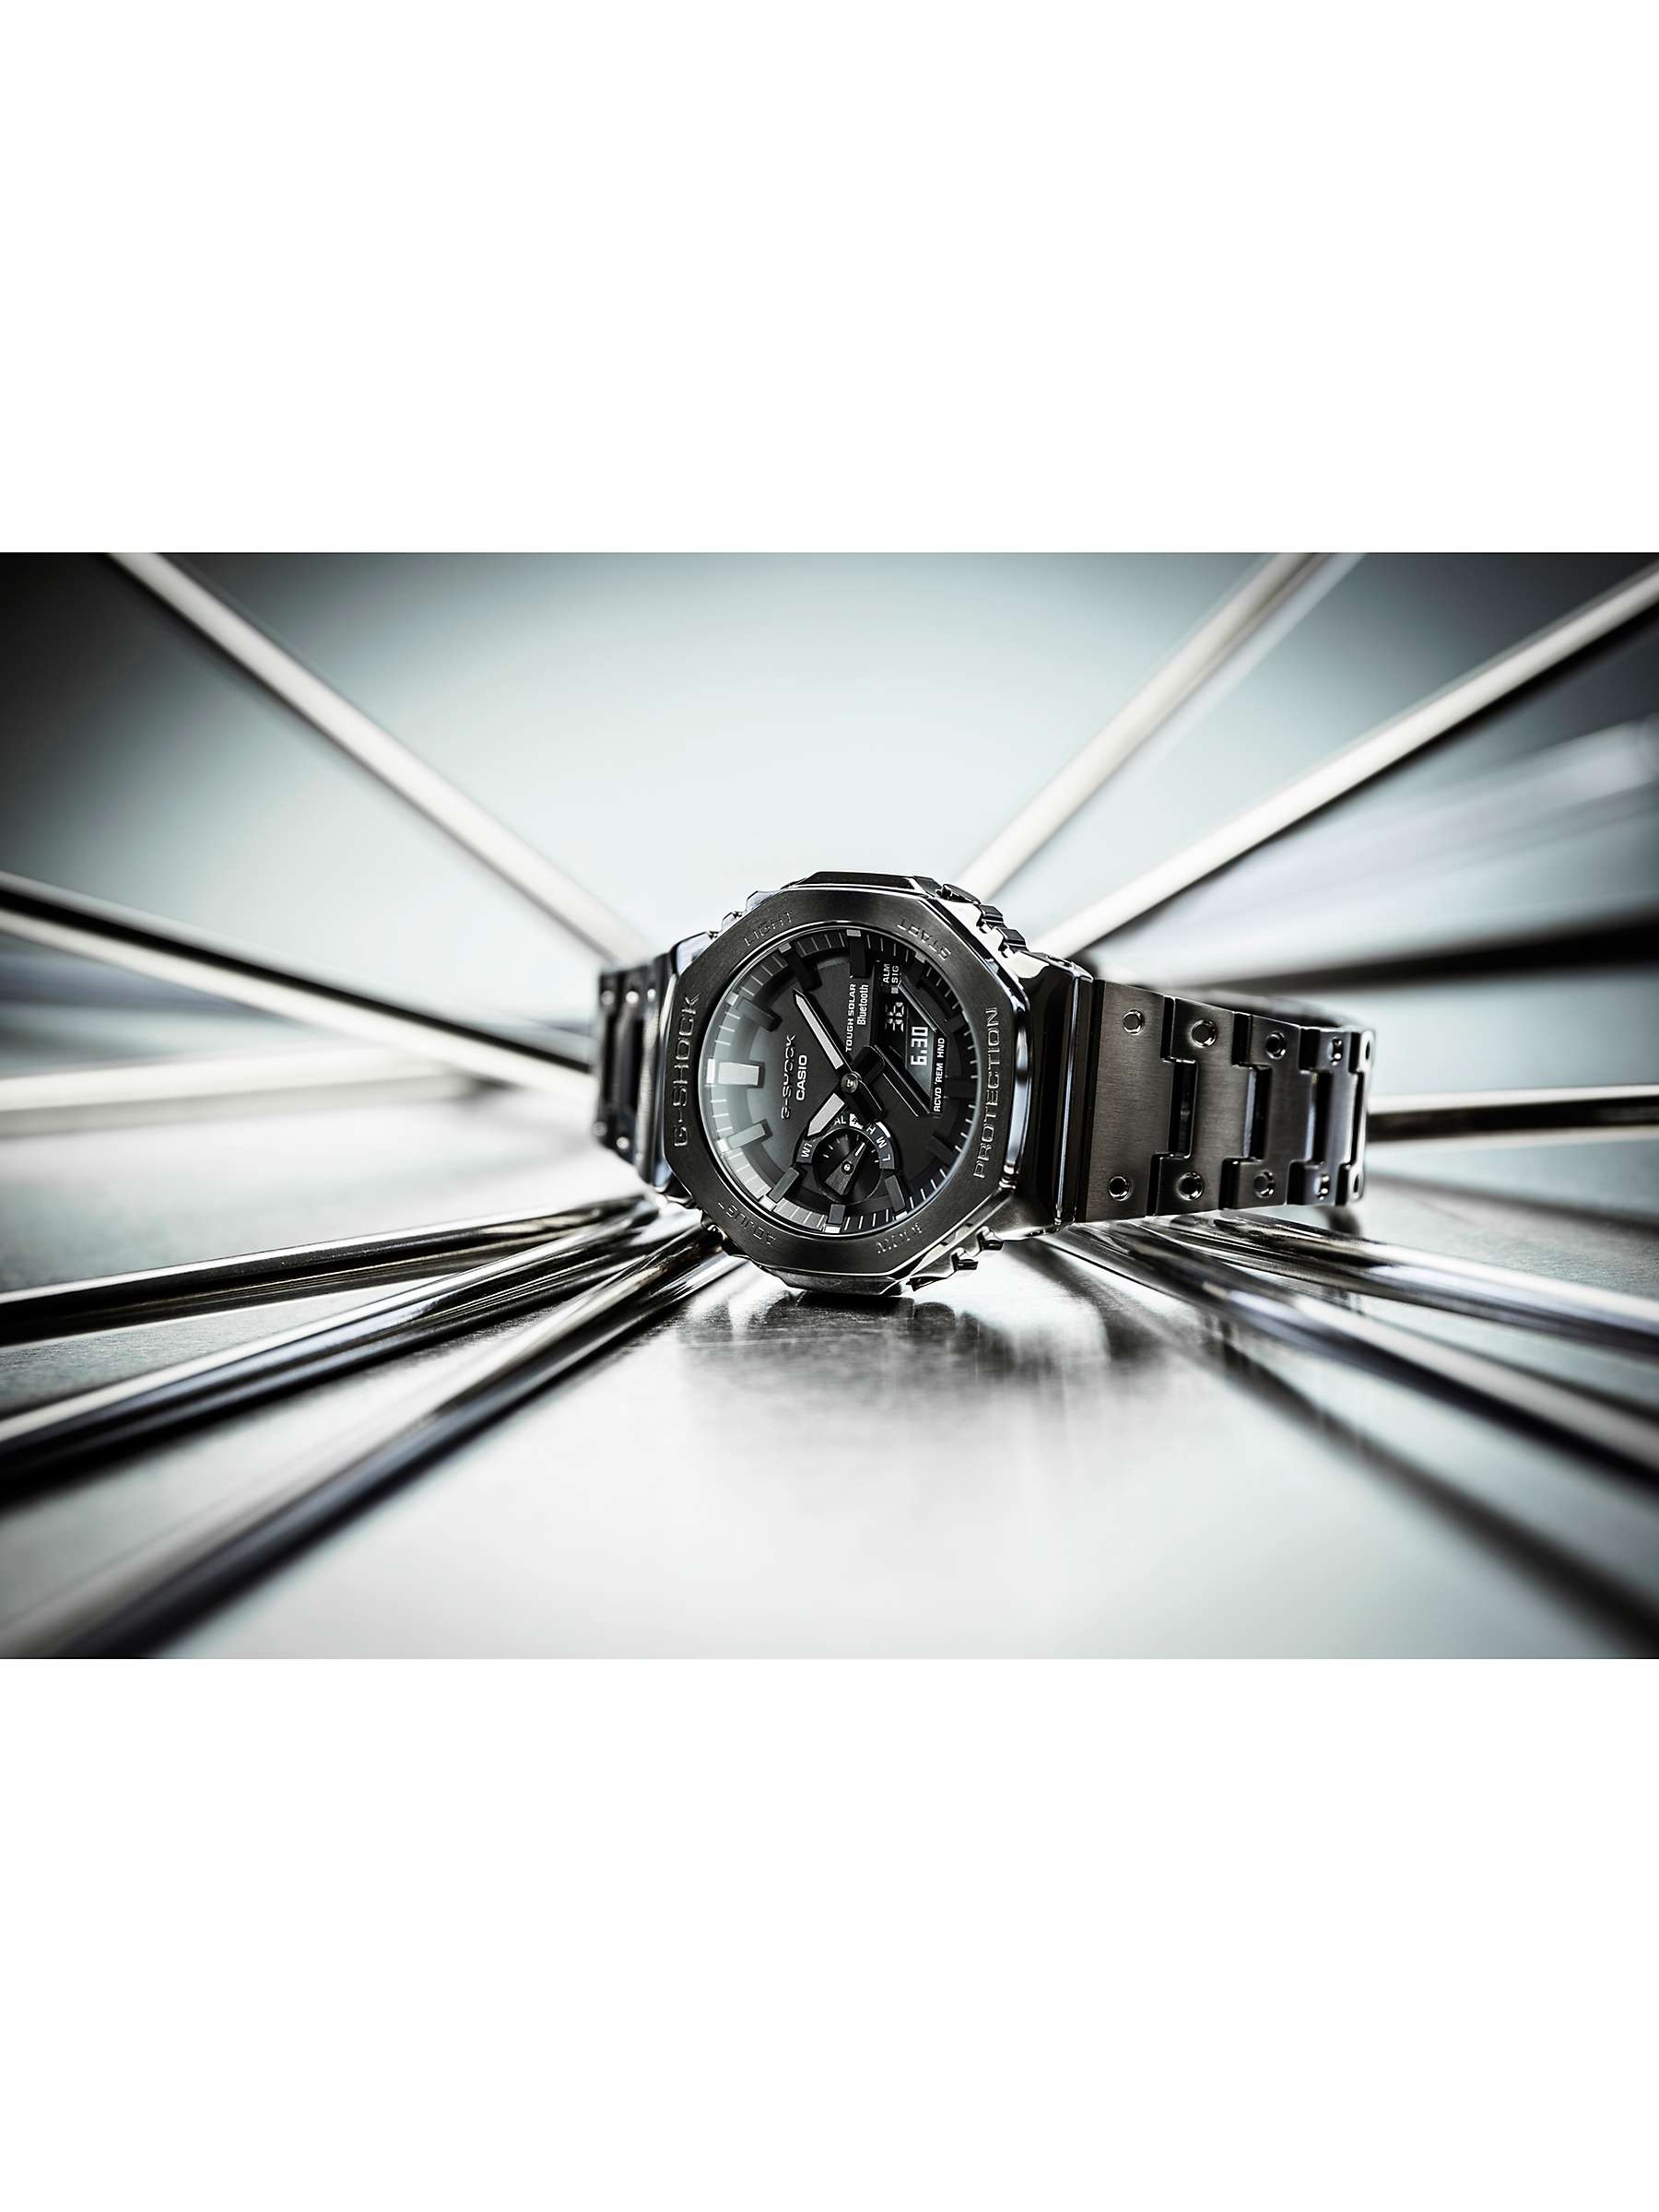 Buy Casio Men's G-Shock Carbon Core Guard Solar Bracelet Strap Watch Online at johnlewis.com